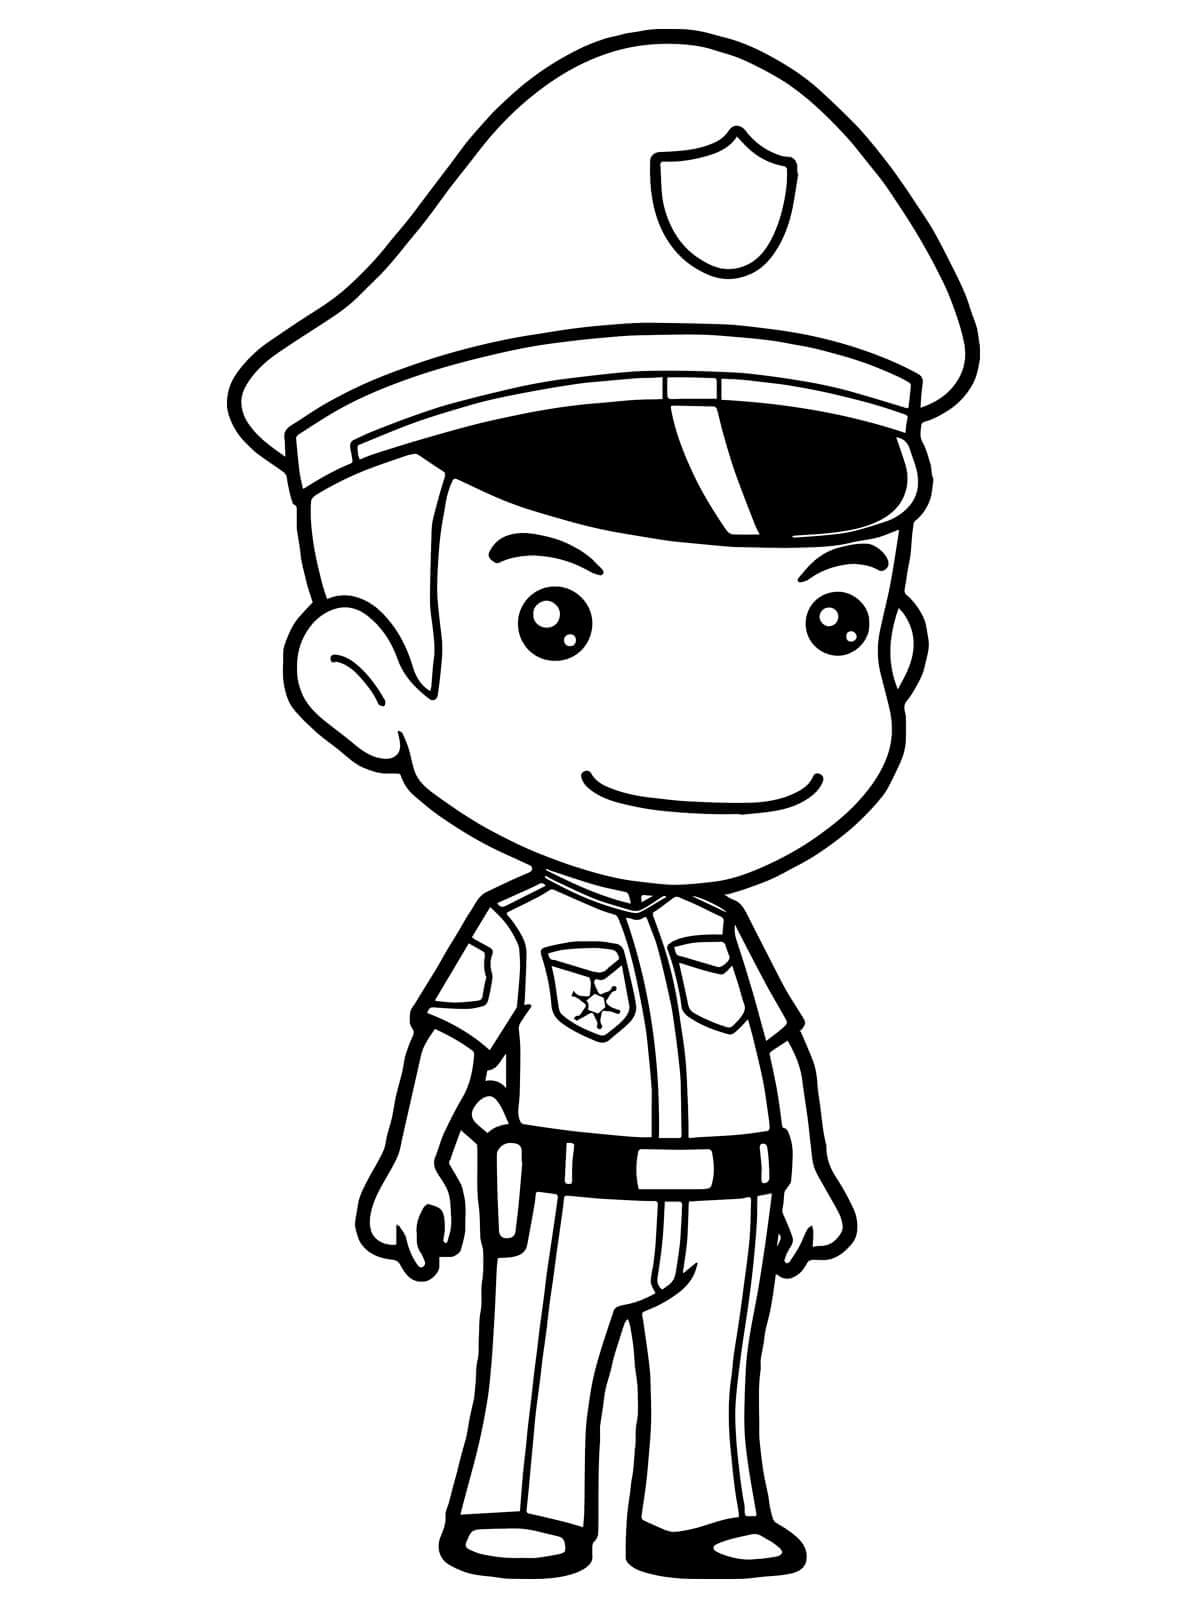 Policial Bonito para colorir